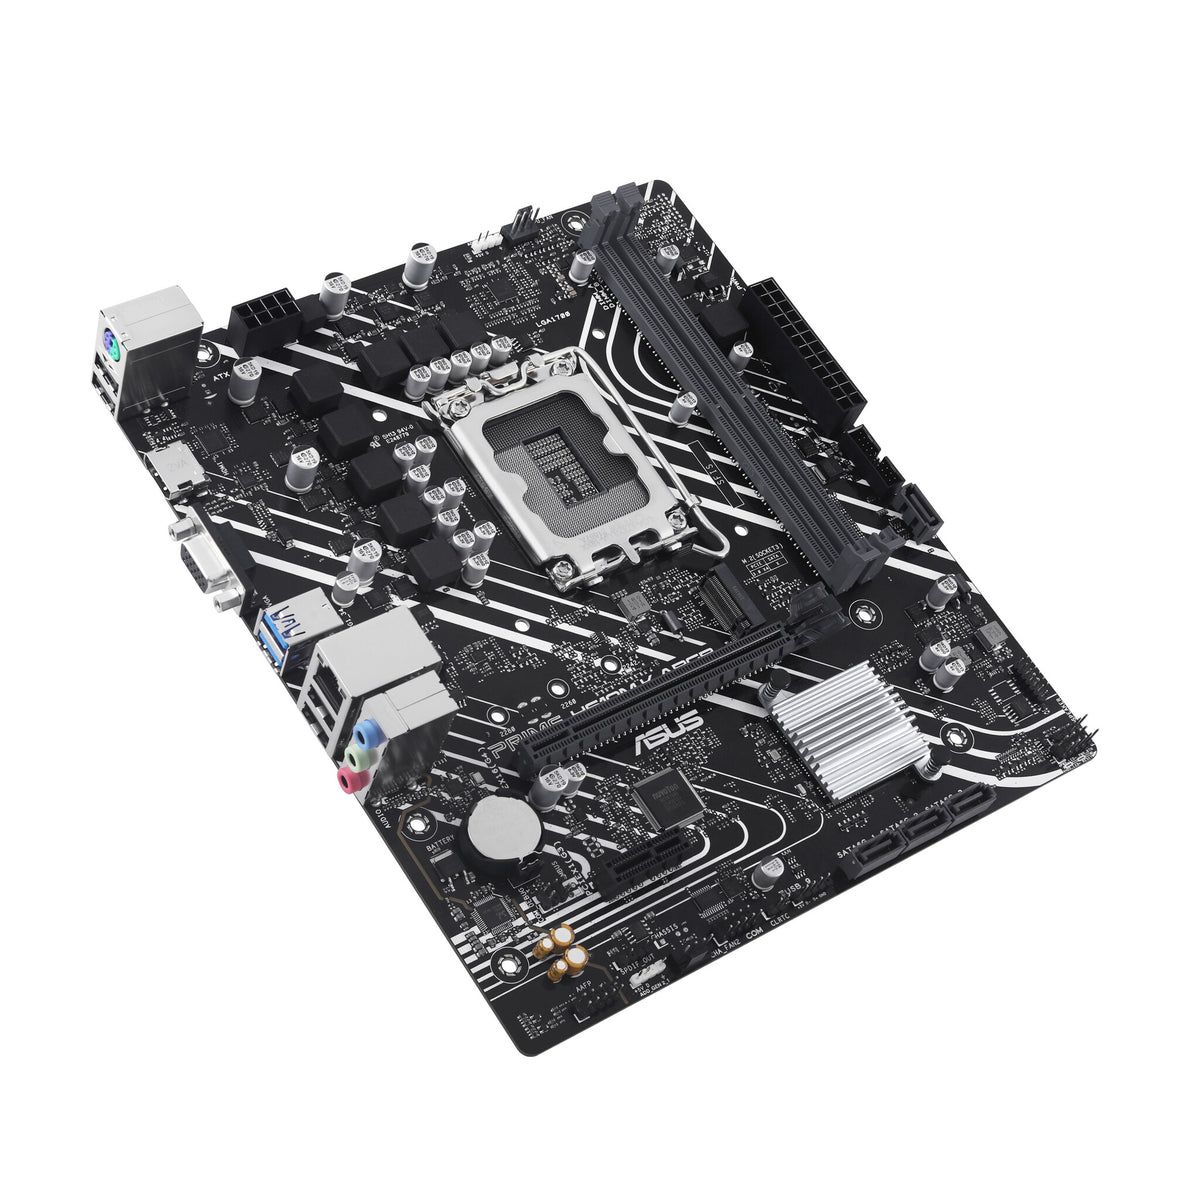 ASUS PRIME H610M-K ARGB micro ATX motherboard - Intel H610 LGA 1700